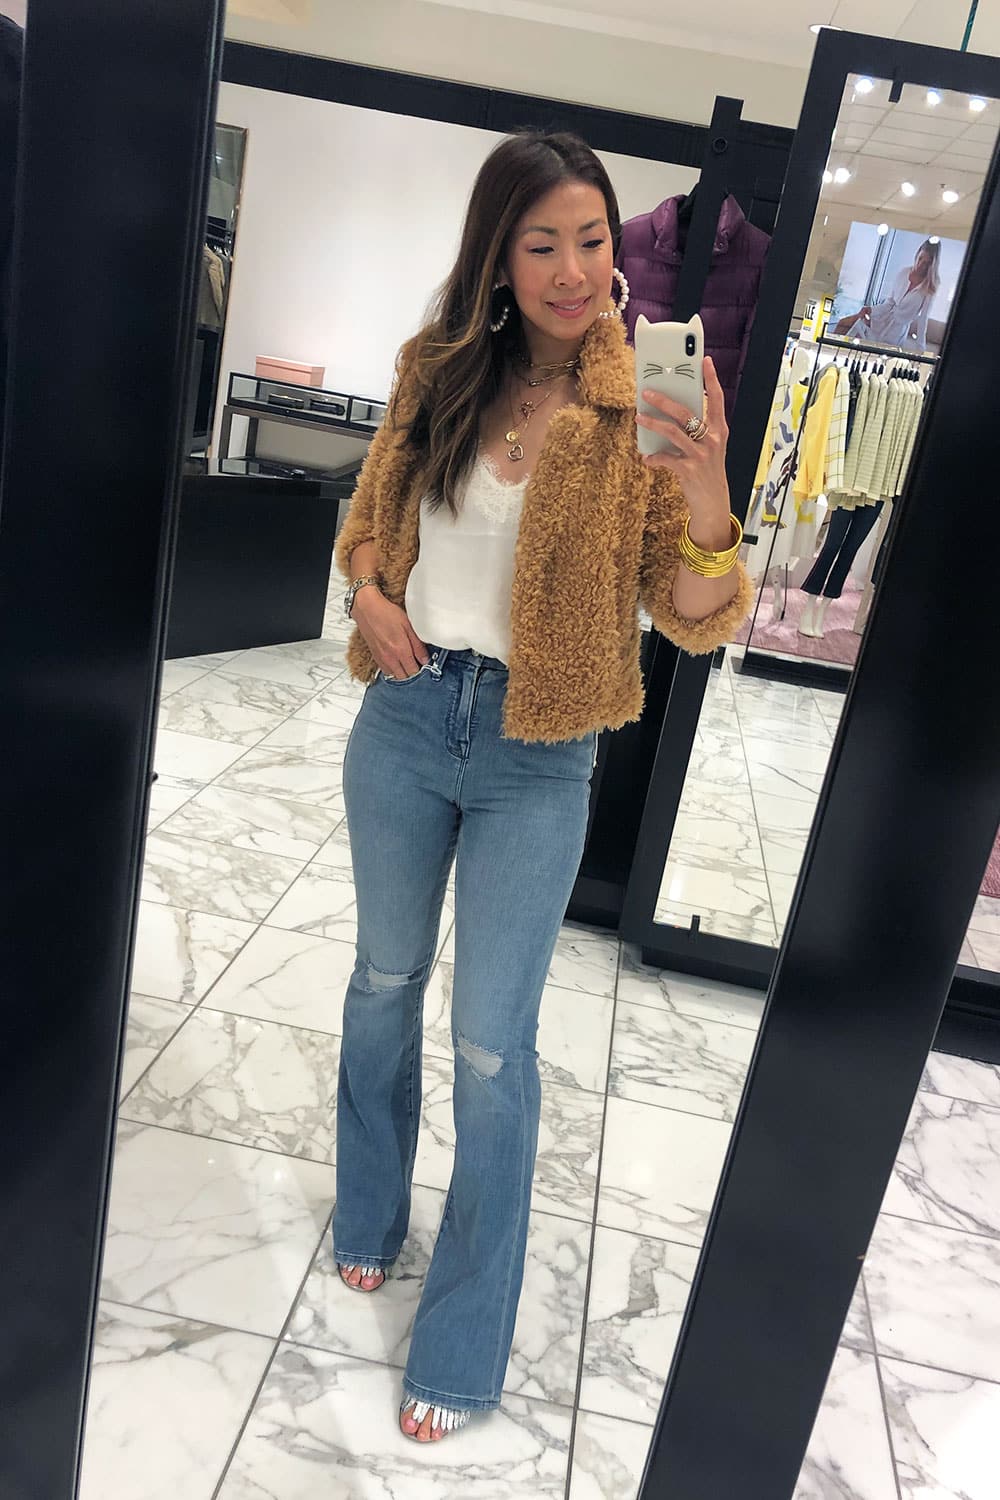 nordstrom anniversary sale 2019 dressing room selfies